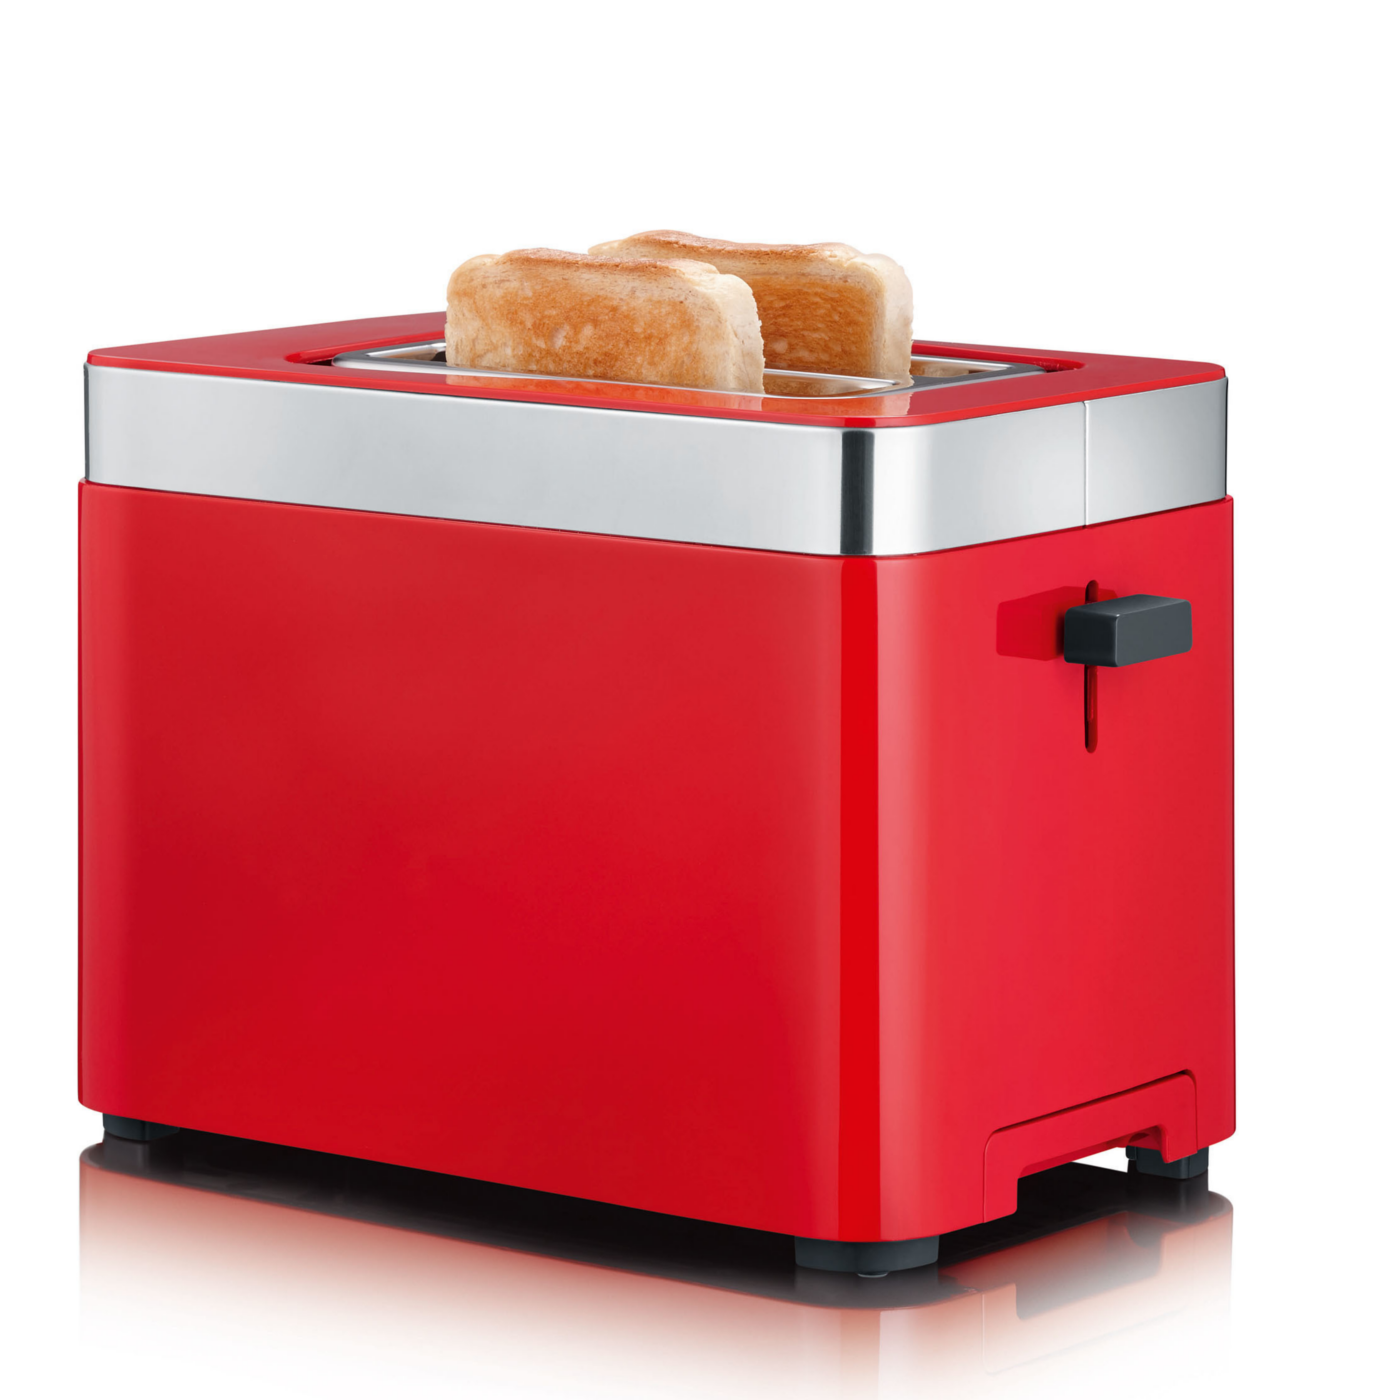 TO63 Kompakter Toaster für 2 Scheiben | Rot